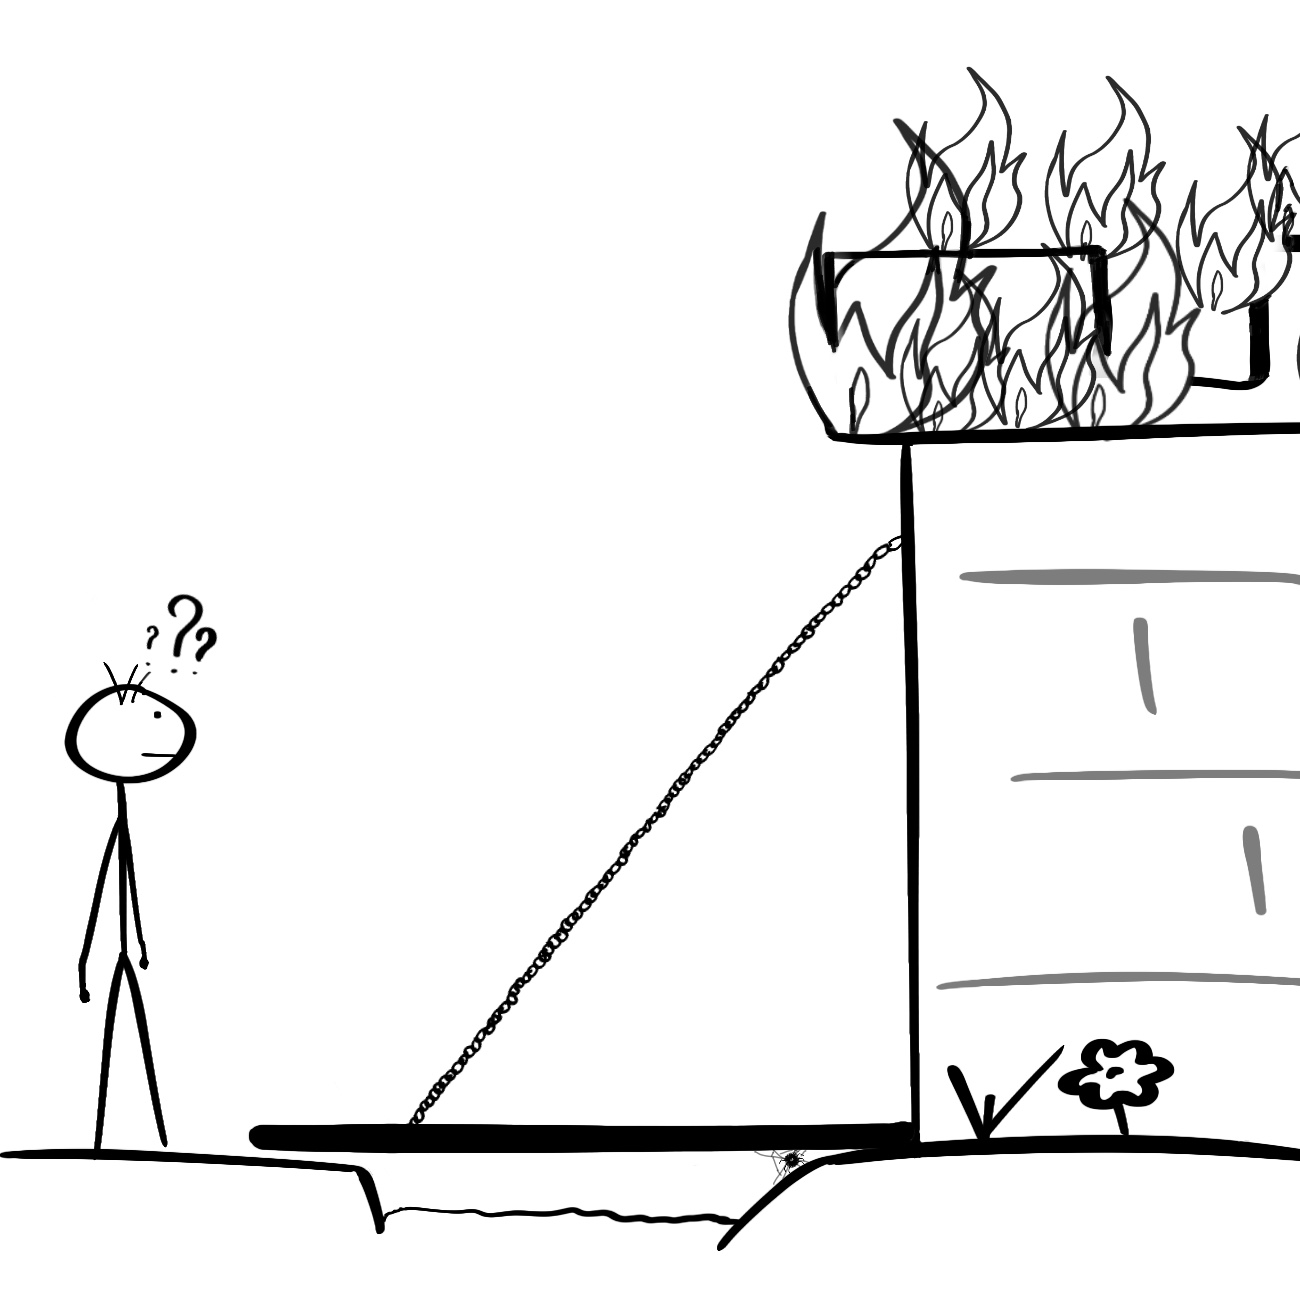 ตัวการ์ตูนก้านไม้ขีดไม่สามารถใช้ห้องสมุดได้เพราะไฟไหม้